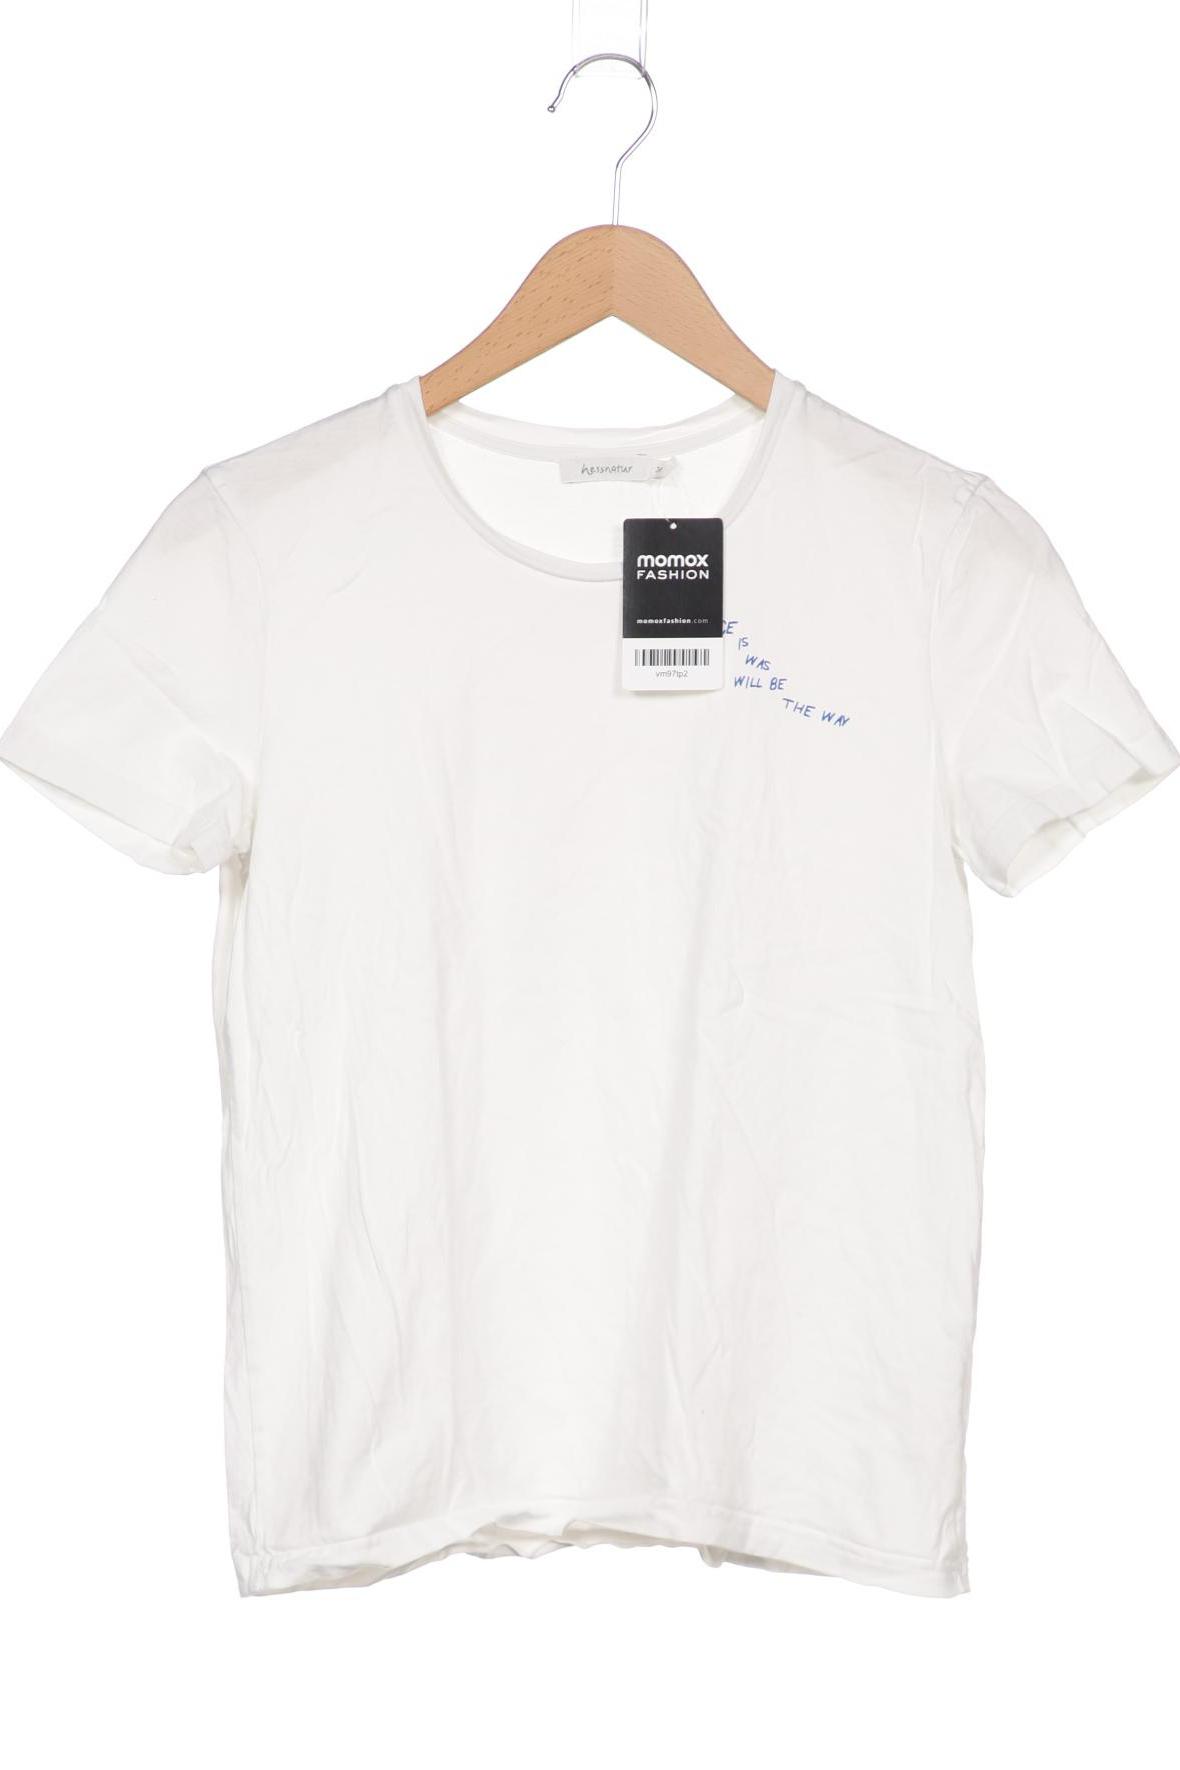 hessnatur Damen T-Shirt, weiß, Gr. 36 von hessnatur